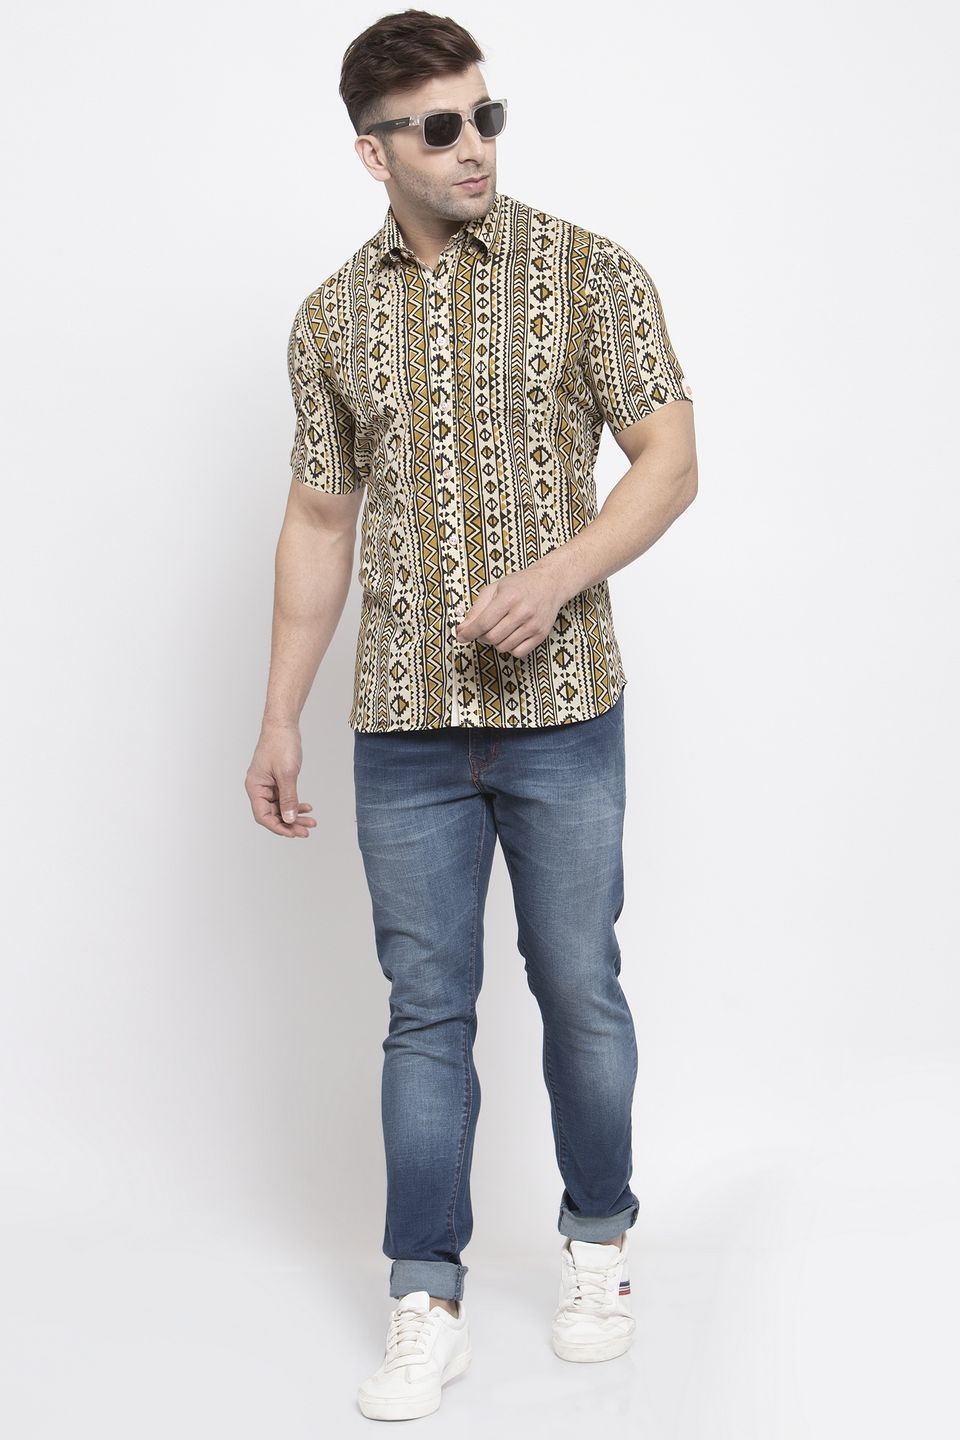 WINTAGE Men's Jaipur Cotton Tropical Hawaiian Batik Casual Shirt: Camel